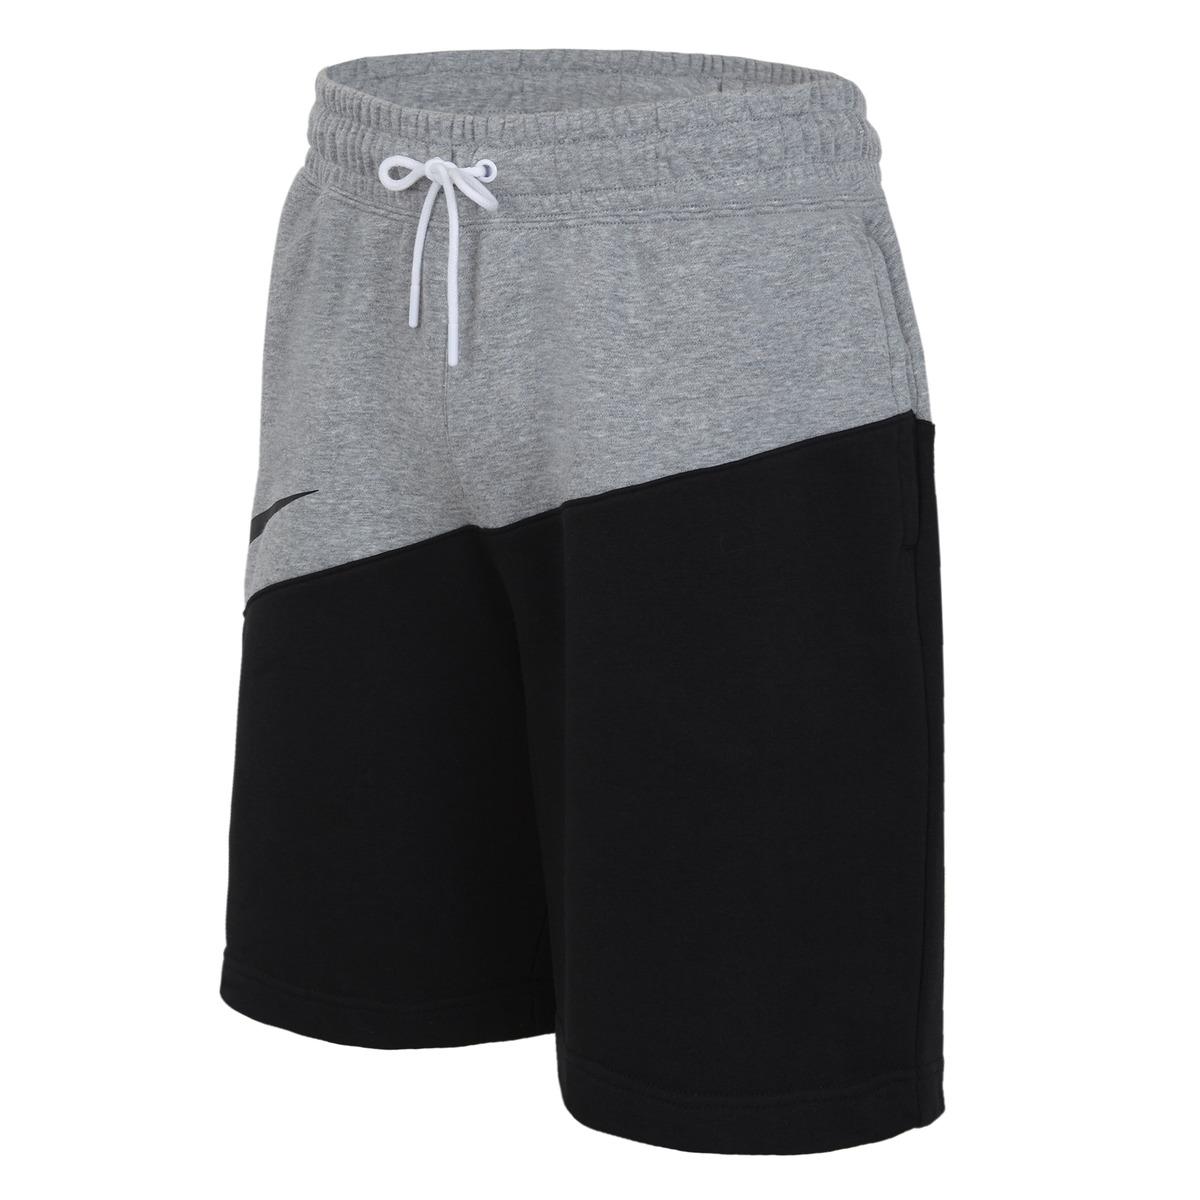 Nike Cotton Sportswear Swoosh Shorts in Black / Grey (Gray) for Men - Lyst